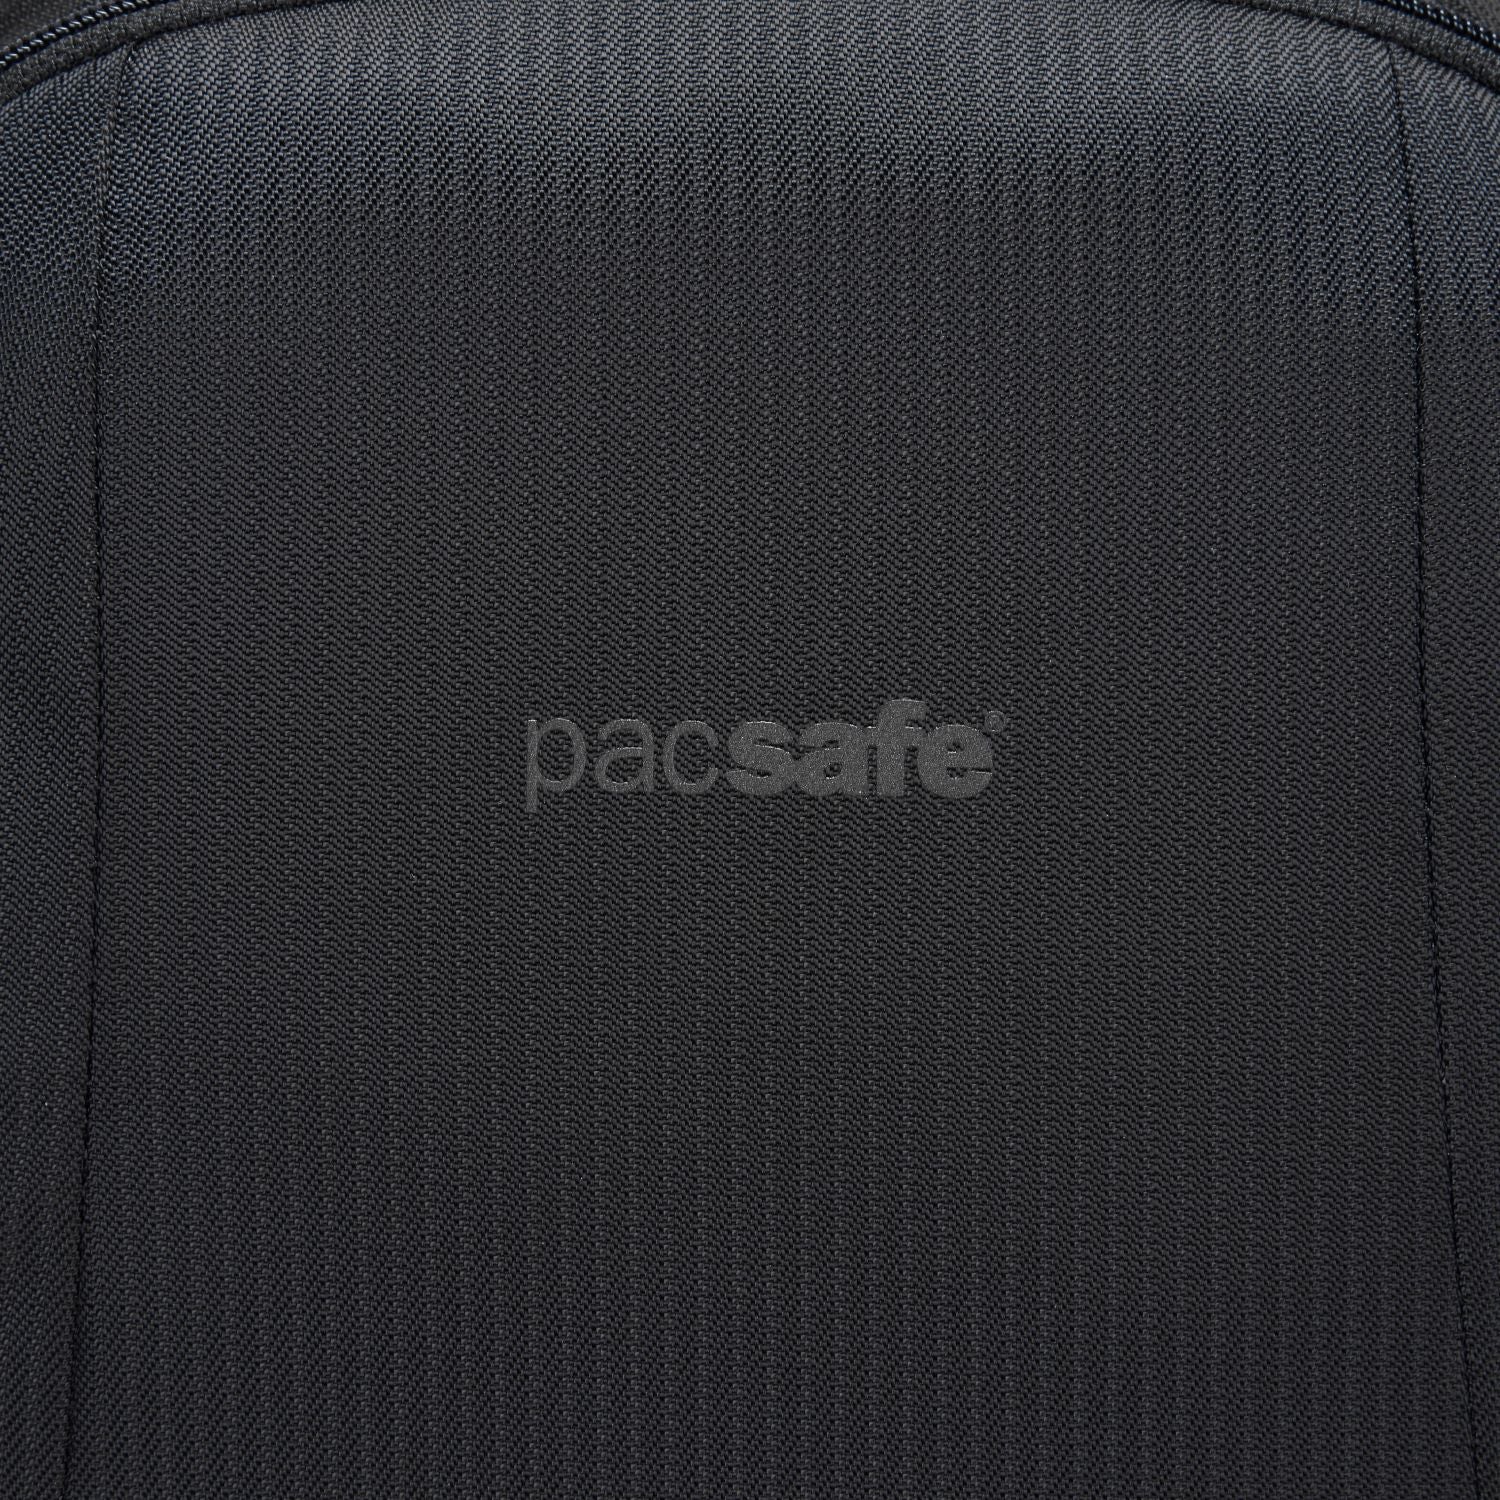 Pacsafe - LS350 Backpack - Black-13